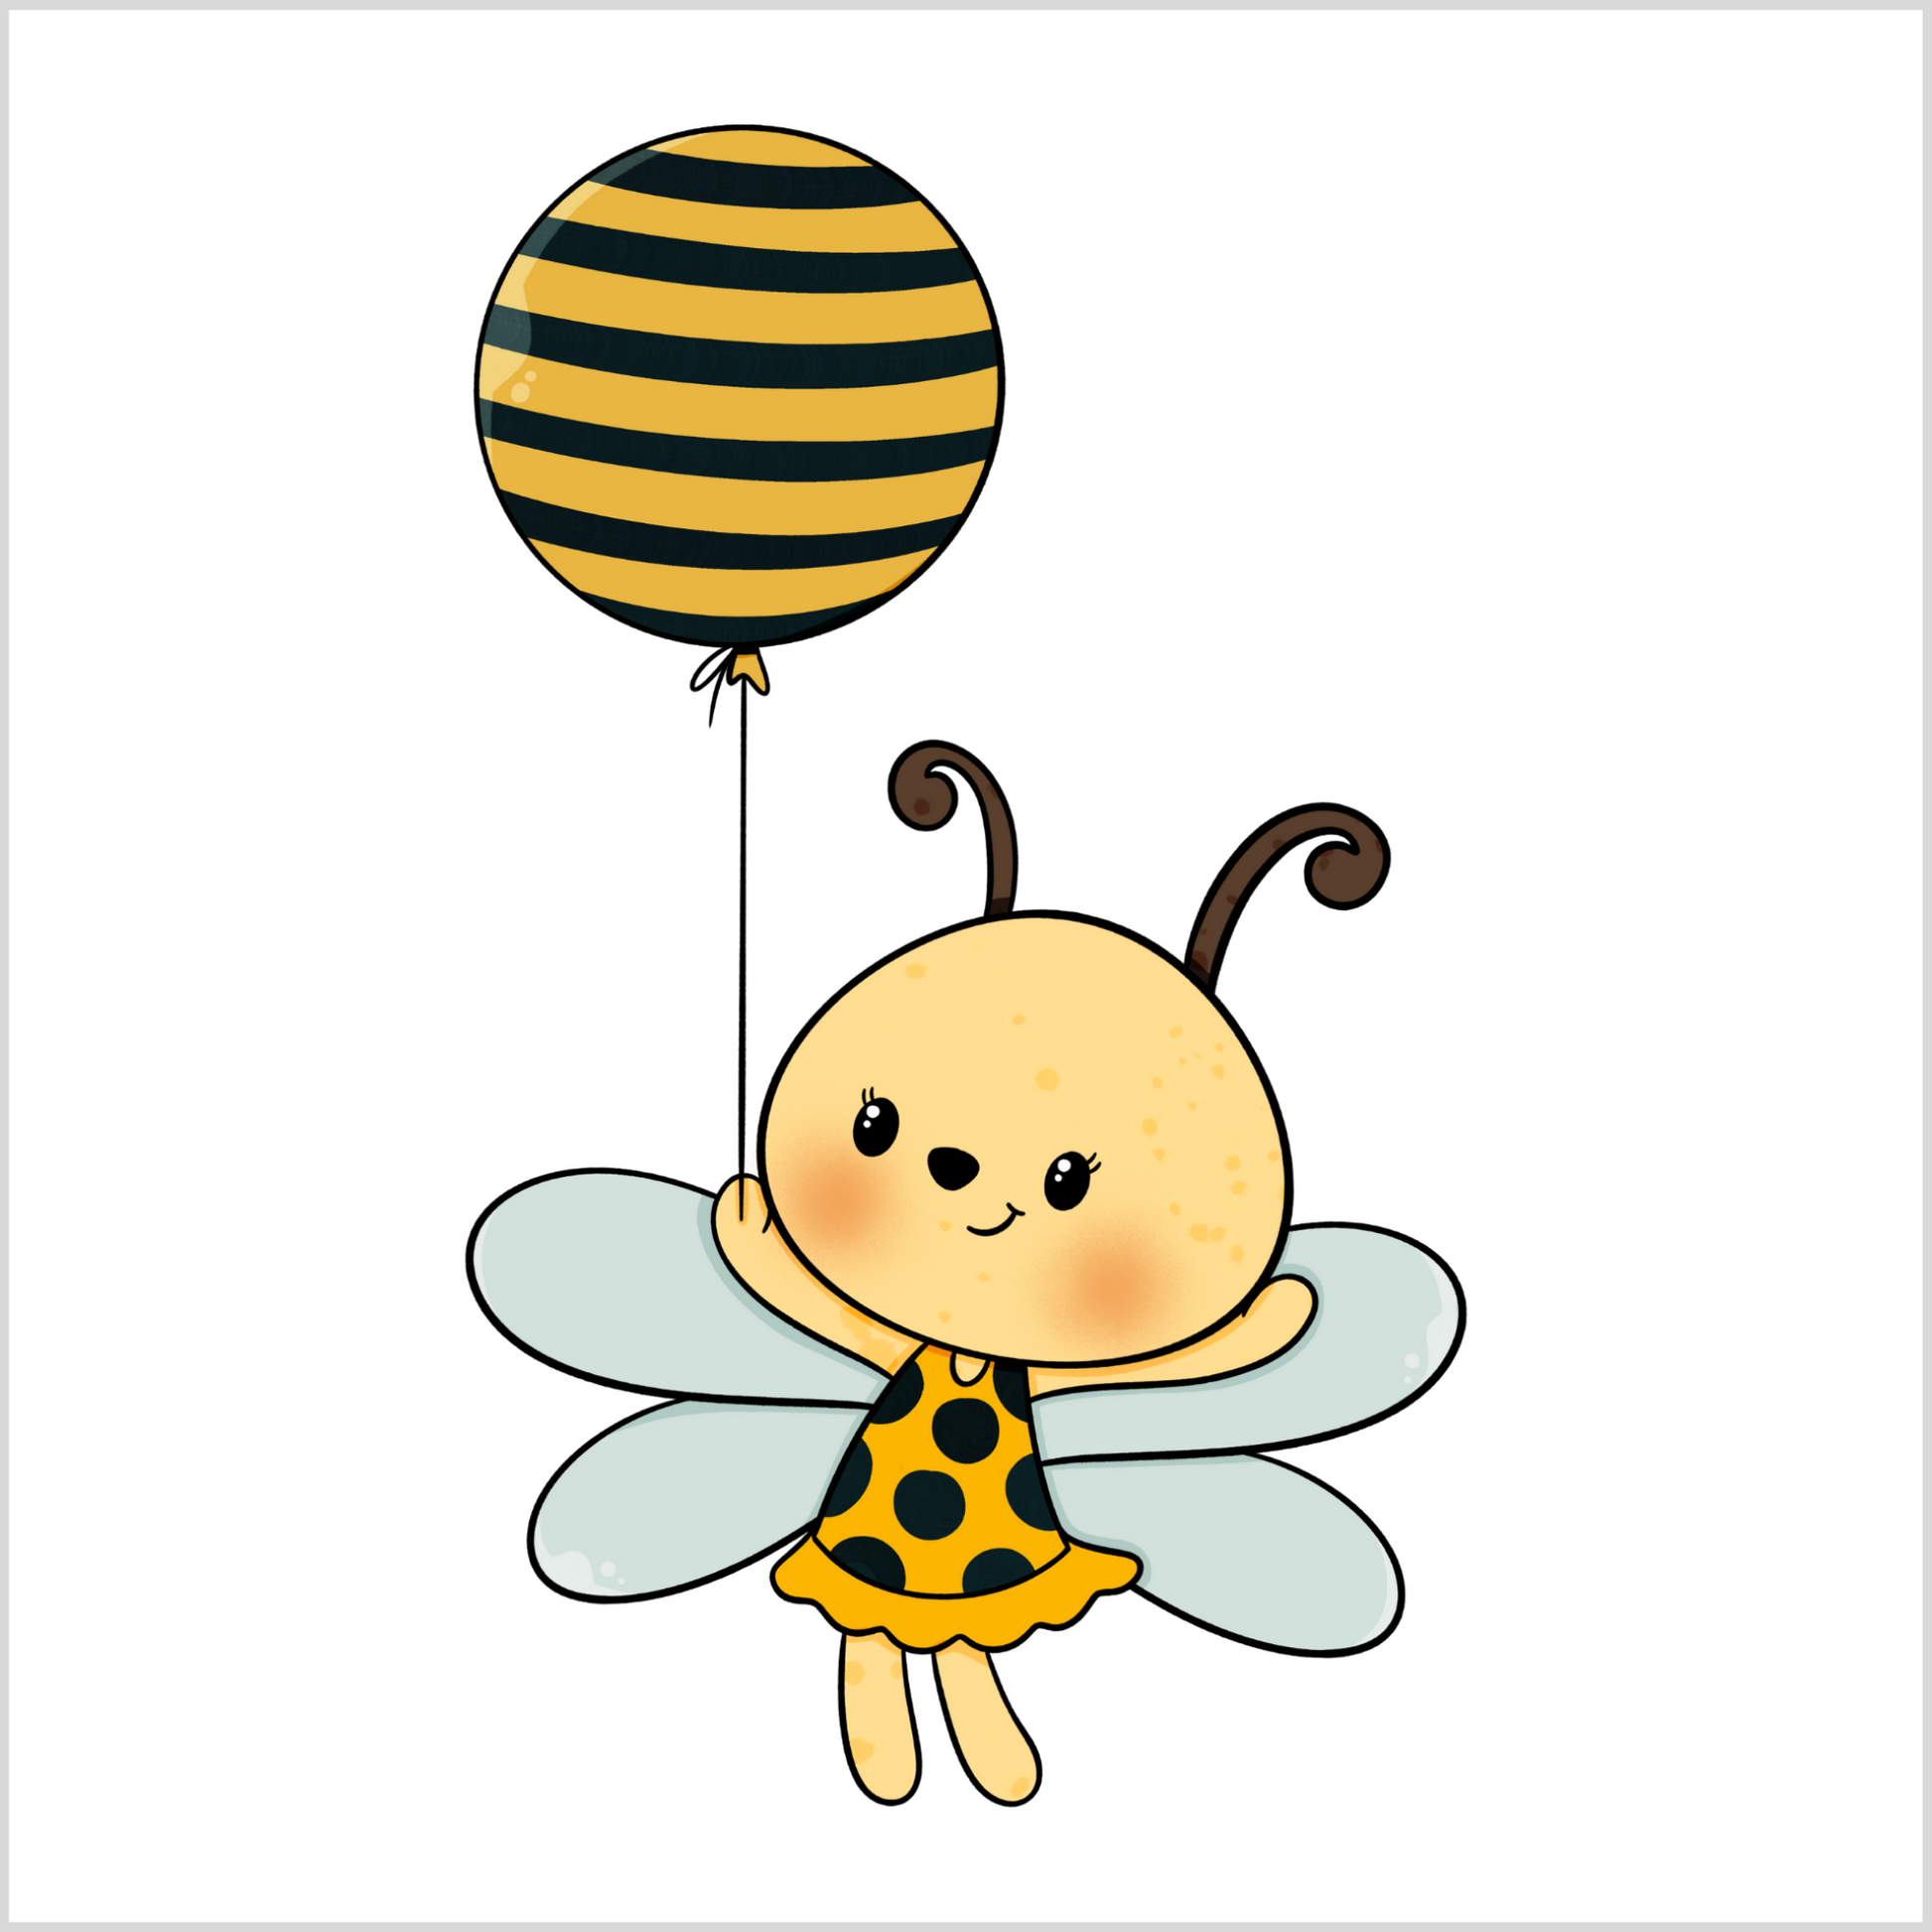 Grafisk motiv som illustrerer en bie-jente som holder en ballong med svarte og gule striper. Den har lyse blå vinger og en gul kjole med svarte prikker.